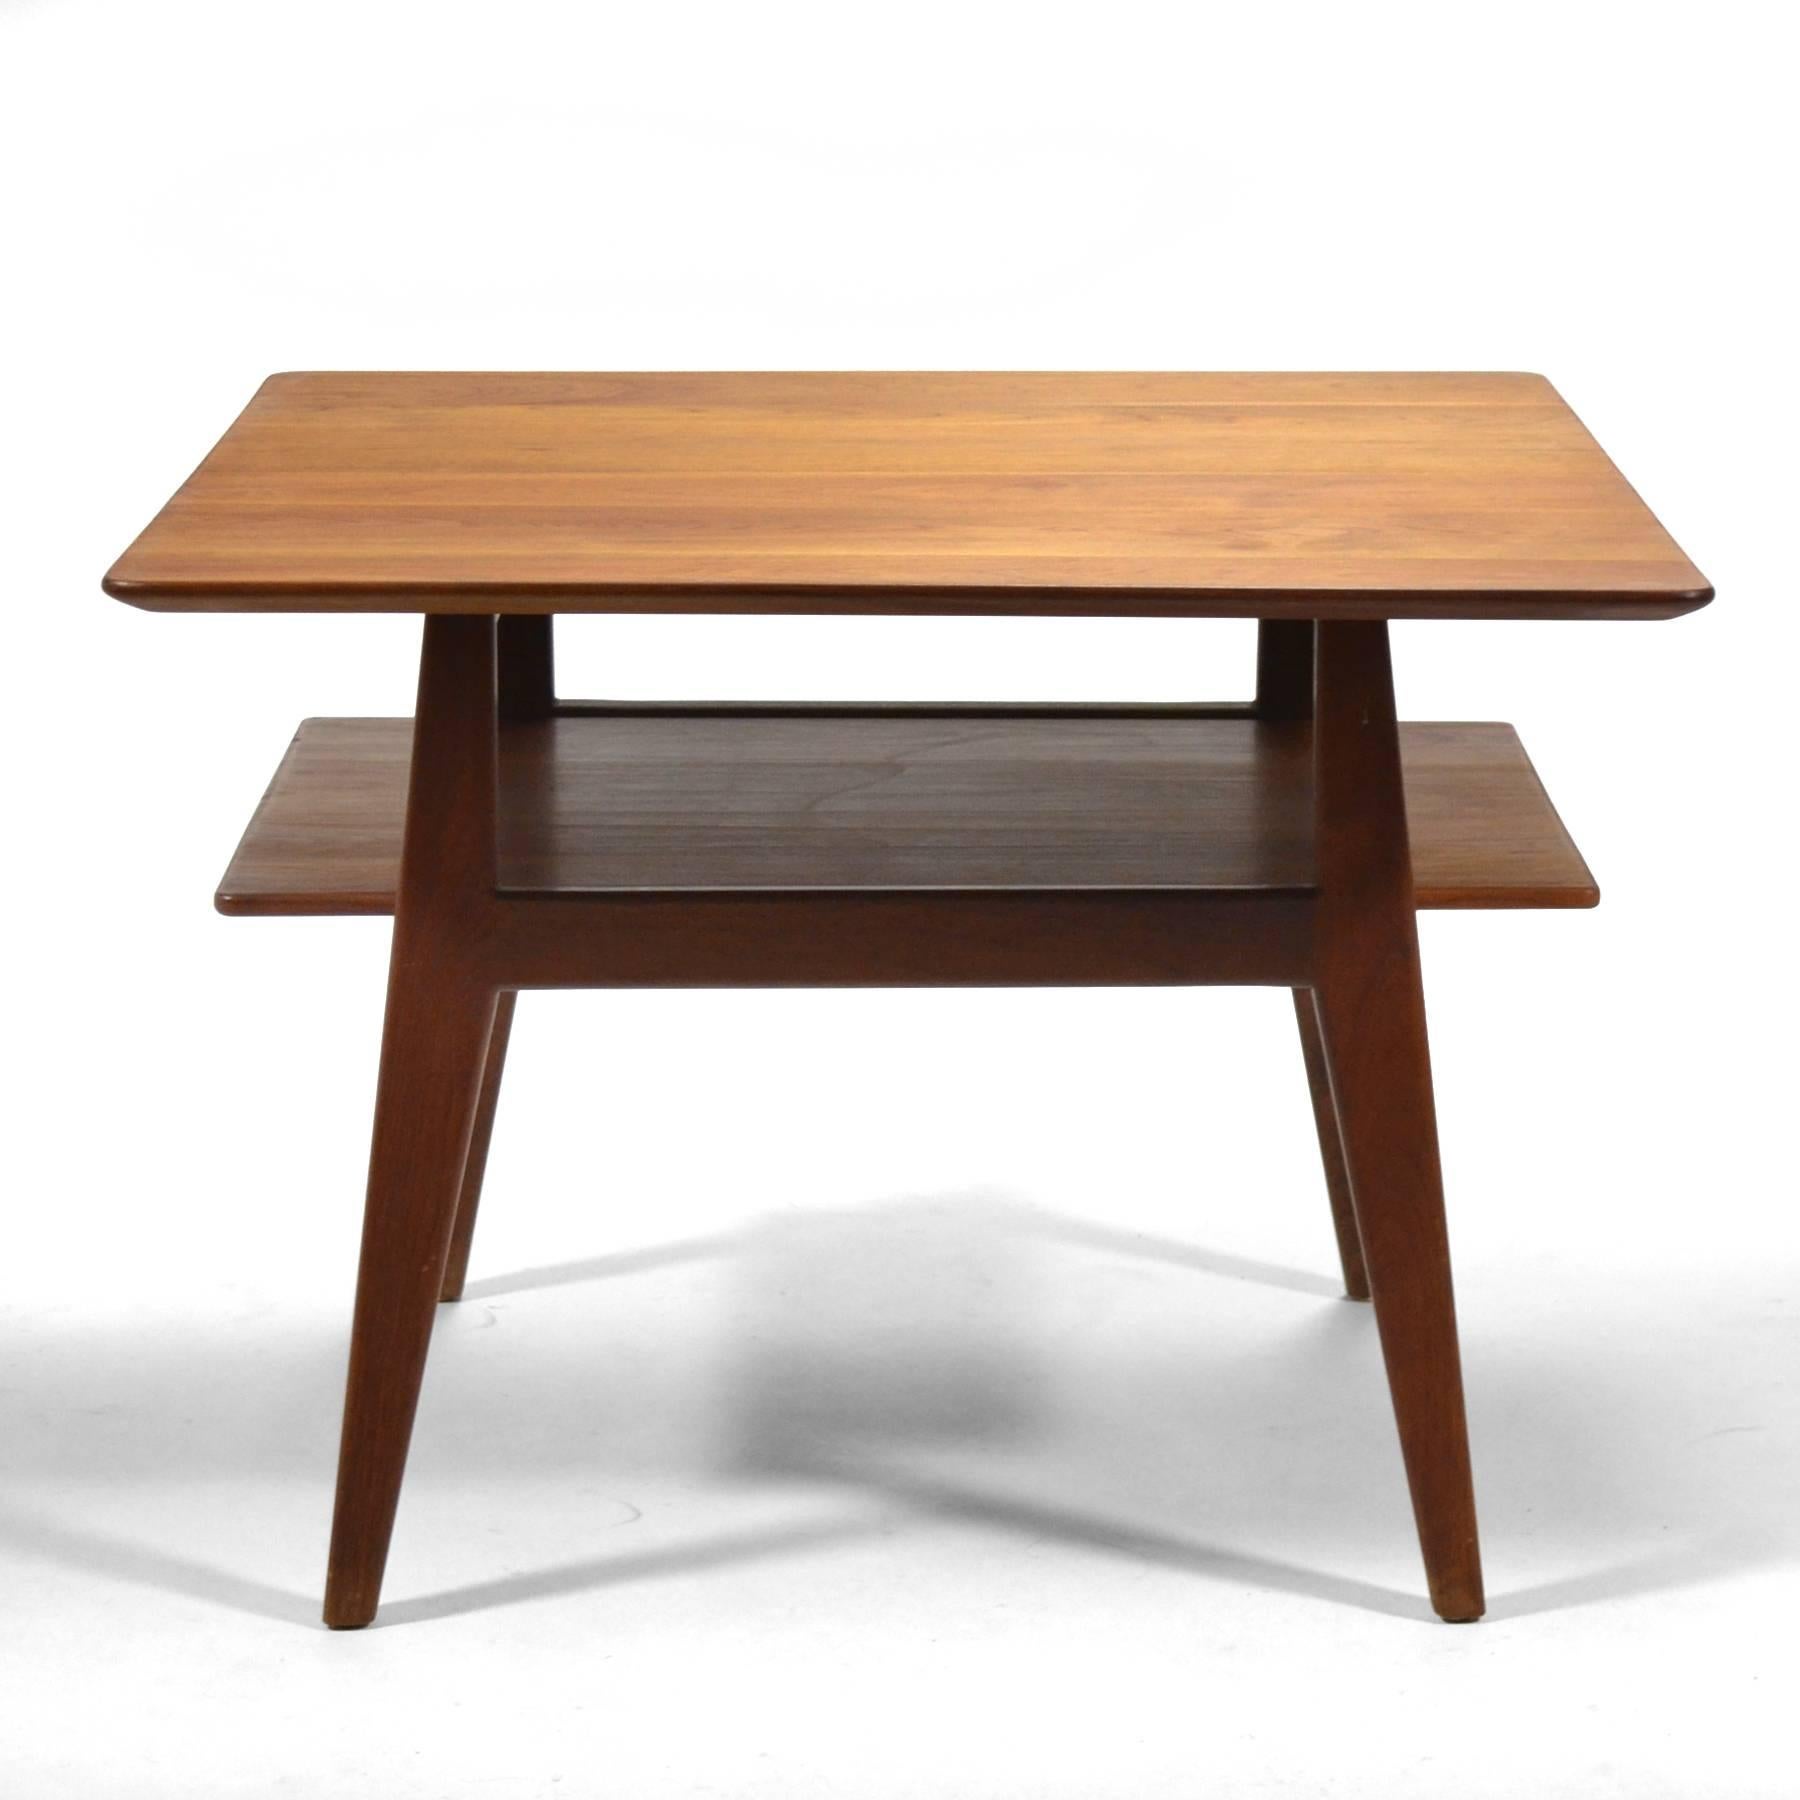 Ein schöner Entwurf von Jens Risom aus massivem Nussbaumholz. Dieser frühe Tisch des Modells 433 hat wunderbare Linien, eine untere Ablage und eine Platte mit tief abgeschrägter Kante.

 